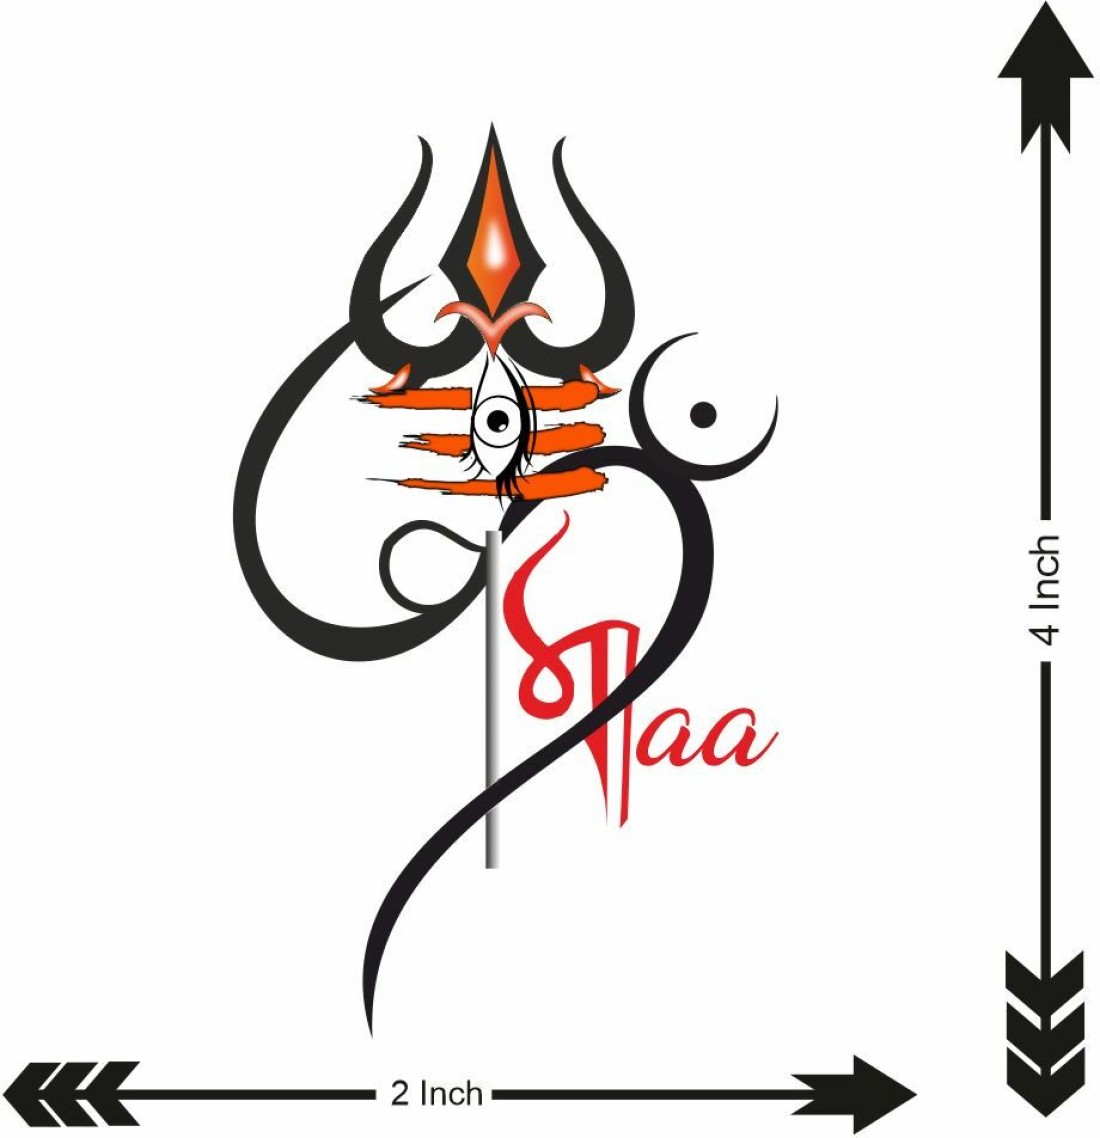 ᴍʀ . ᴠɪsʜᴜ ✌️ on Instagram: “Happy maha shivaratri....🖤🙇‍♂️🥰☮️ ꜱᴜᴩᴩᴏʀᴛ  ɴᴇᴇᴅᴇᴅ🤞 🔰𝚂𝚑𝚊𝚛𝚎🔄𝚖𝚊𝚡𝚒𝚖?… | Hindu tattoos, Shiva tattoo, Trishul  tattoo designs